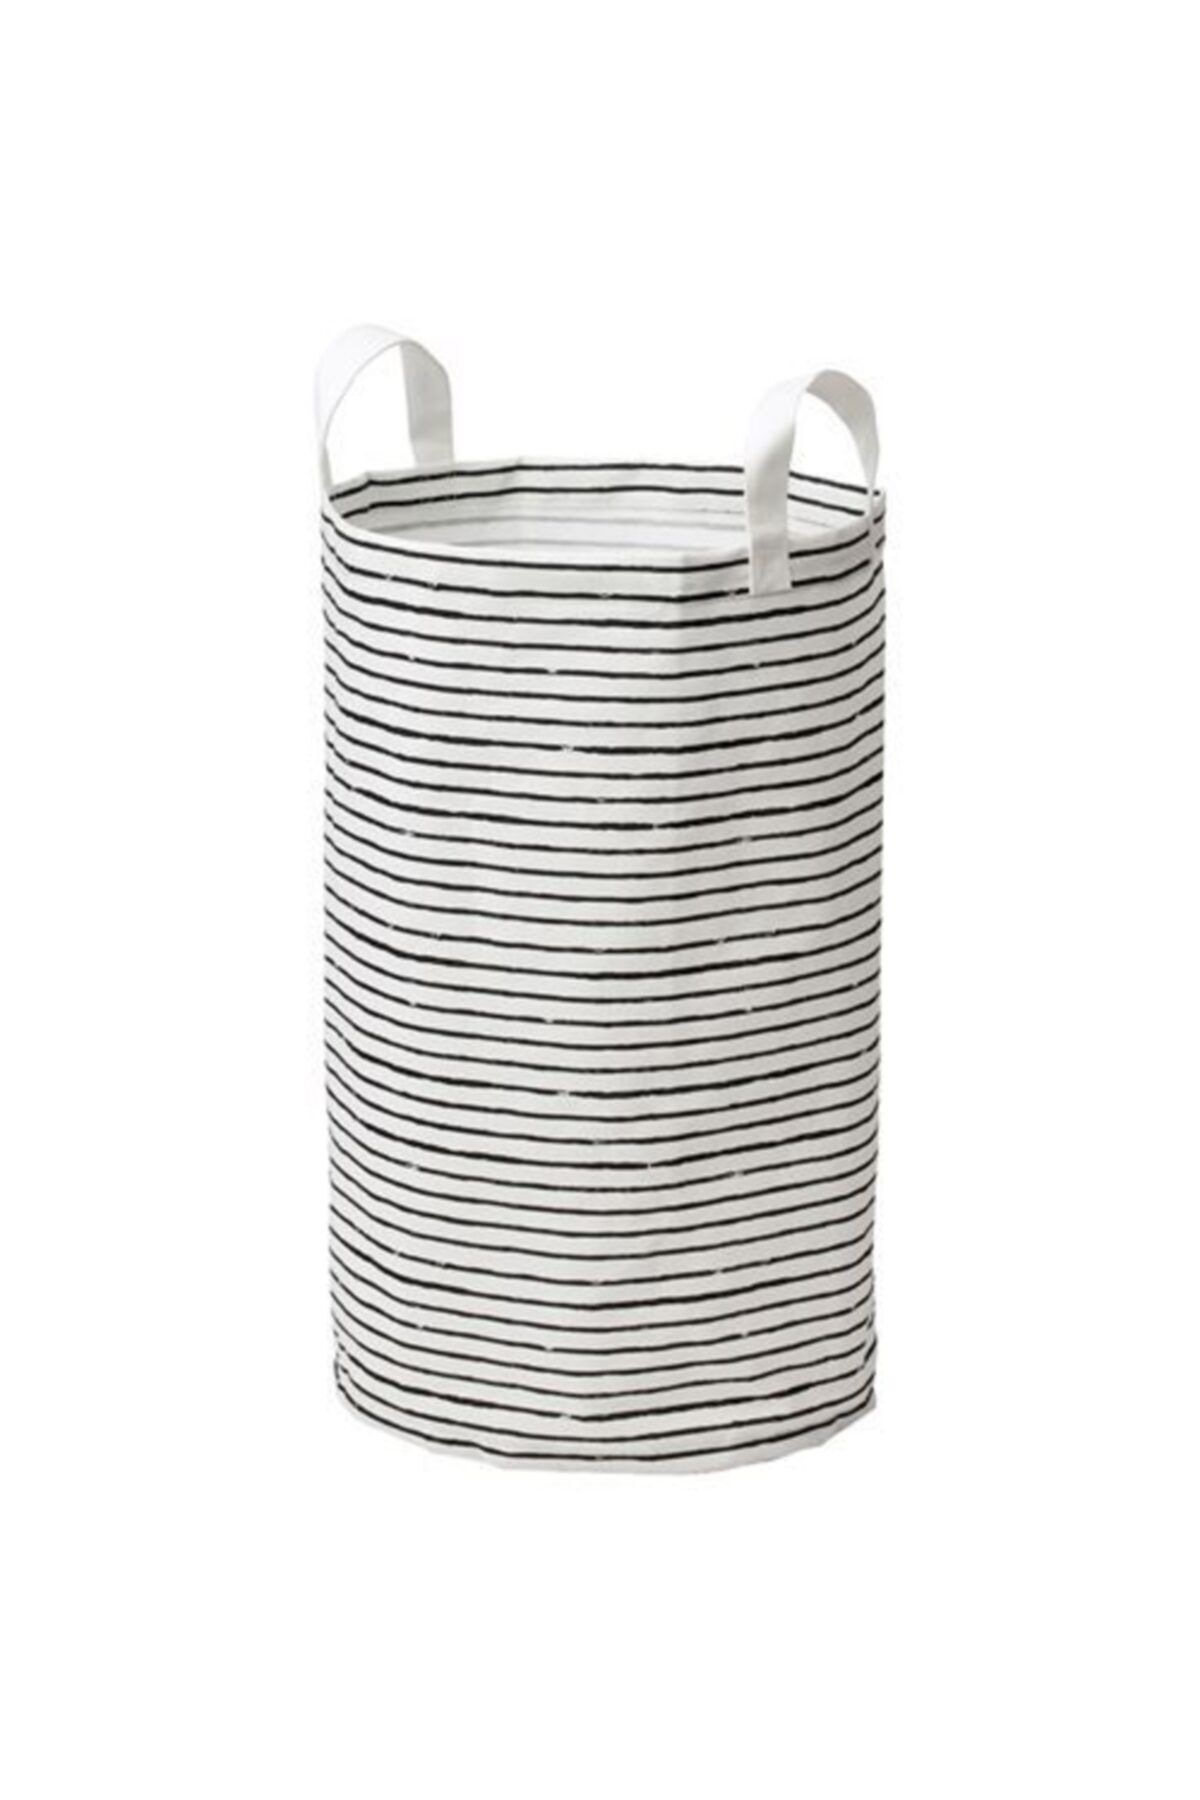 IKEA 60 Litre Çamaşır Torbası,sepeti Meridyendukkan Beyaz-siyah Katlanabilir Sepet